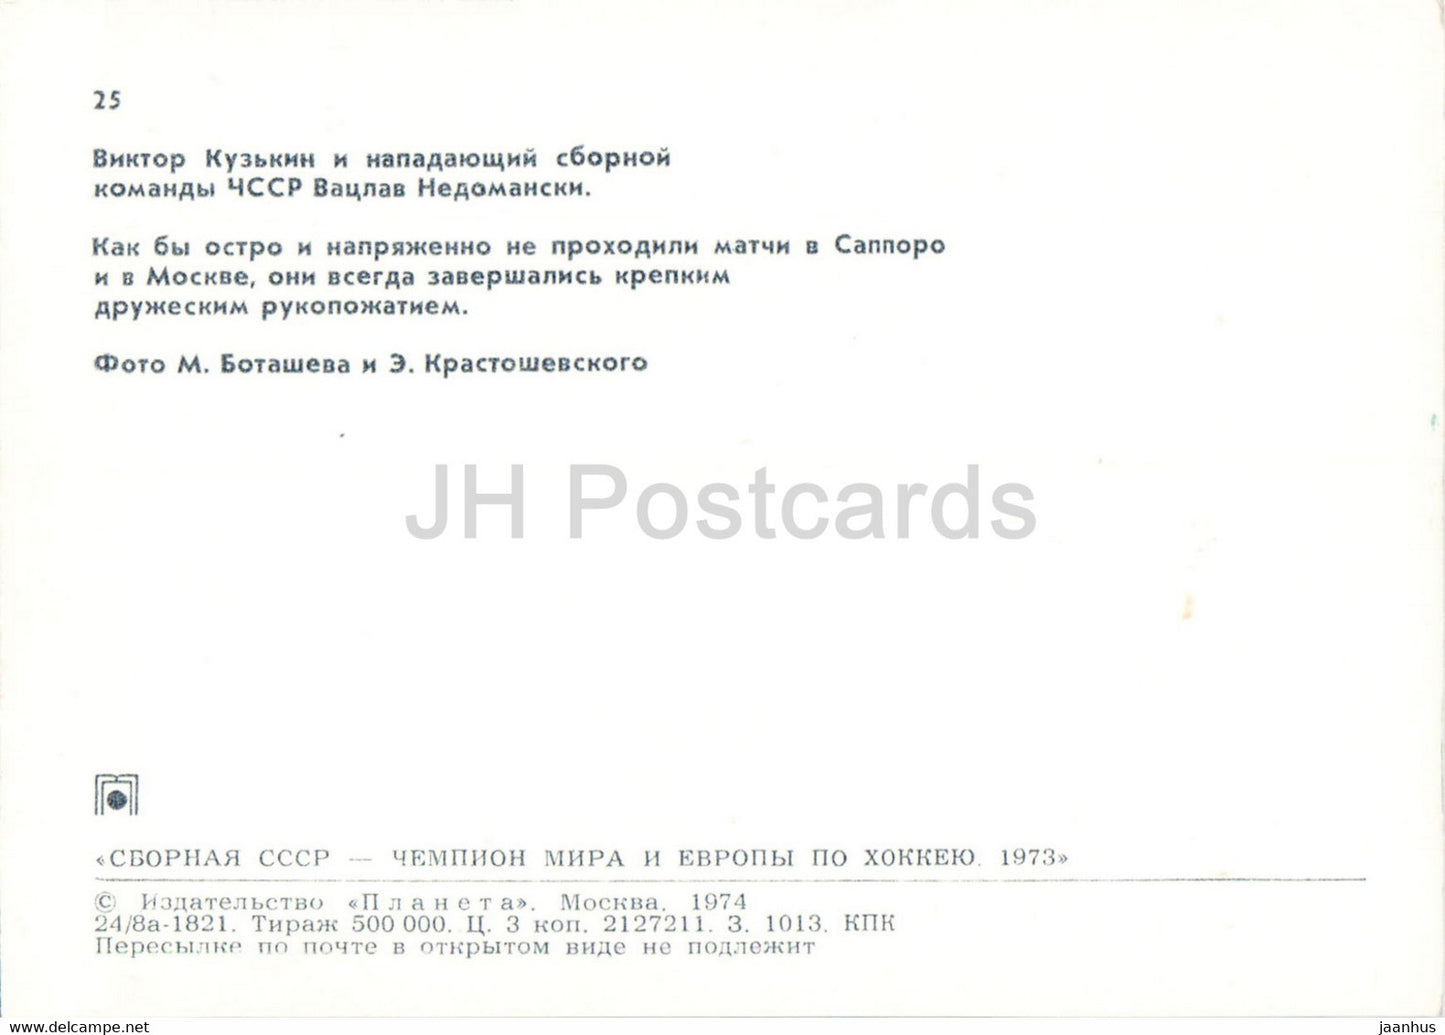 Viktor Kuzkin - Vaclav Nedomanski - USSR ice hockey team - world champion 1973 - 1974 - Russia USSR - unused